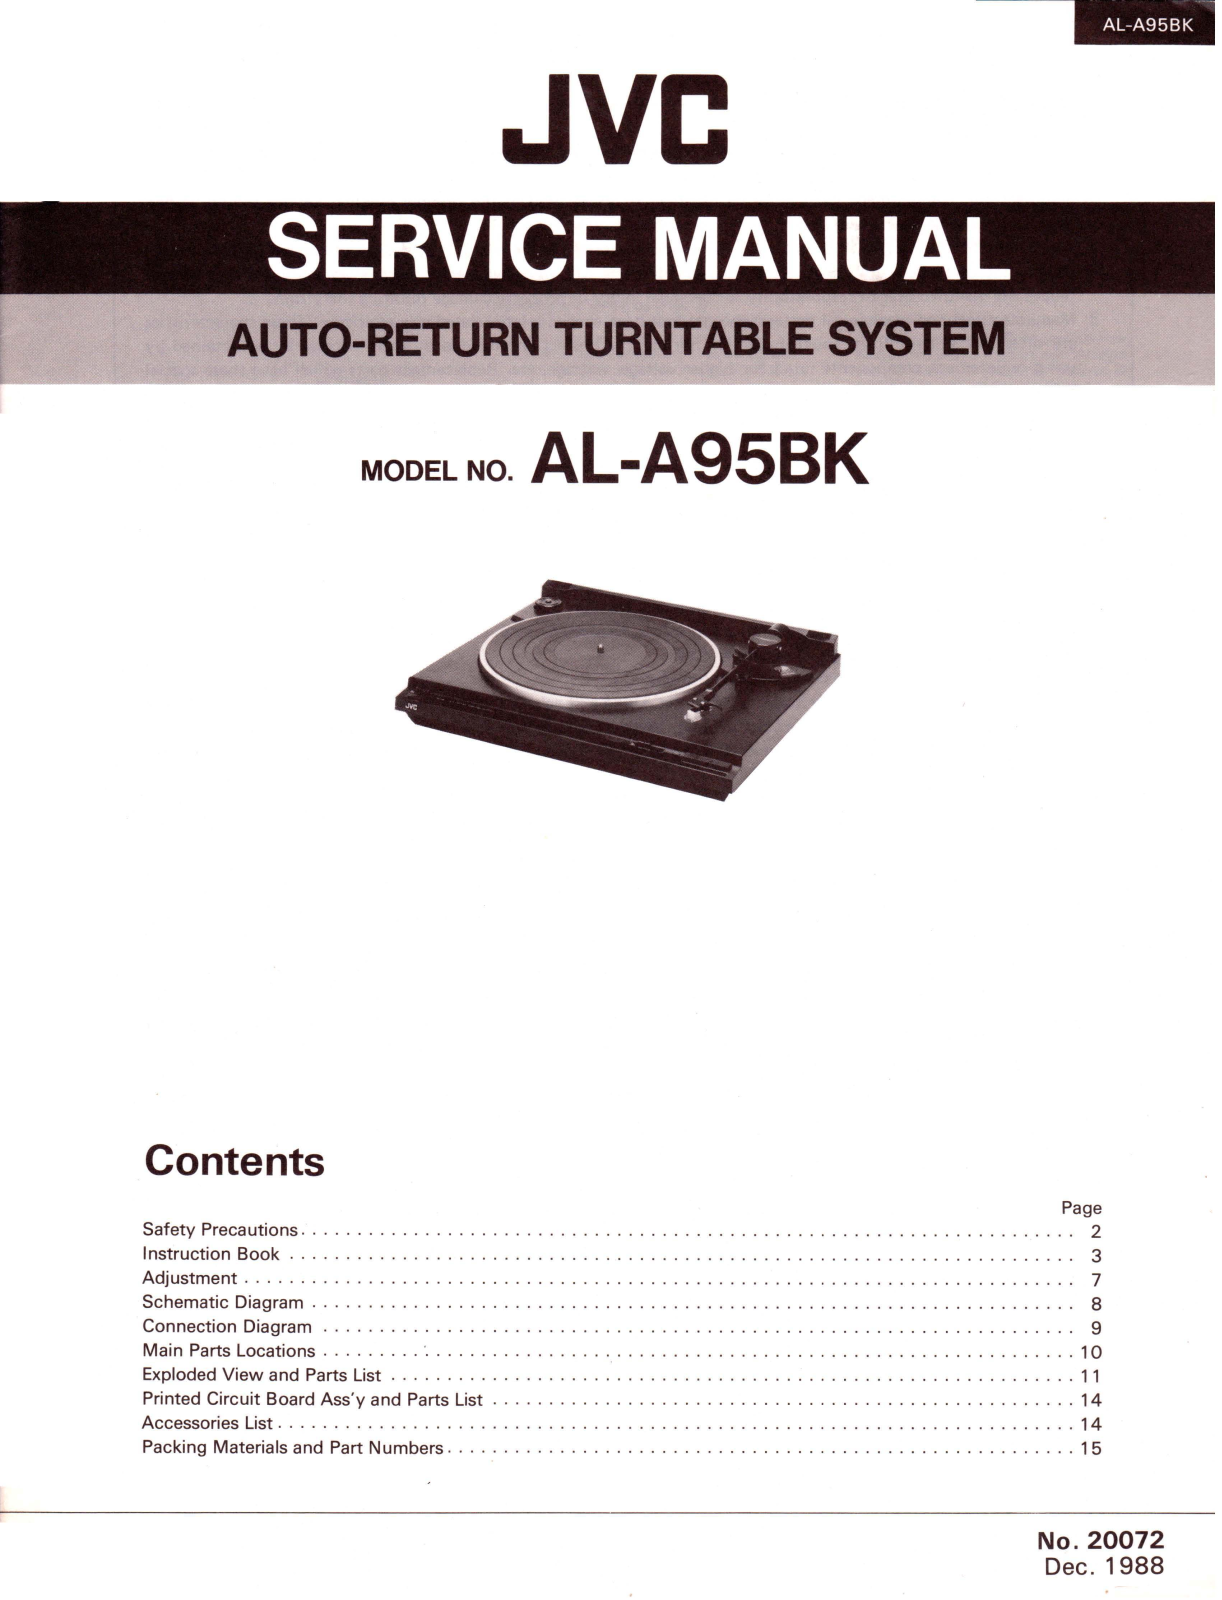 Jvc AL-A95BK Service Manual